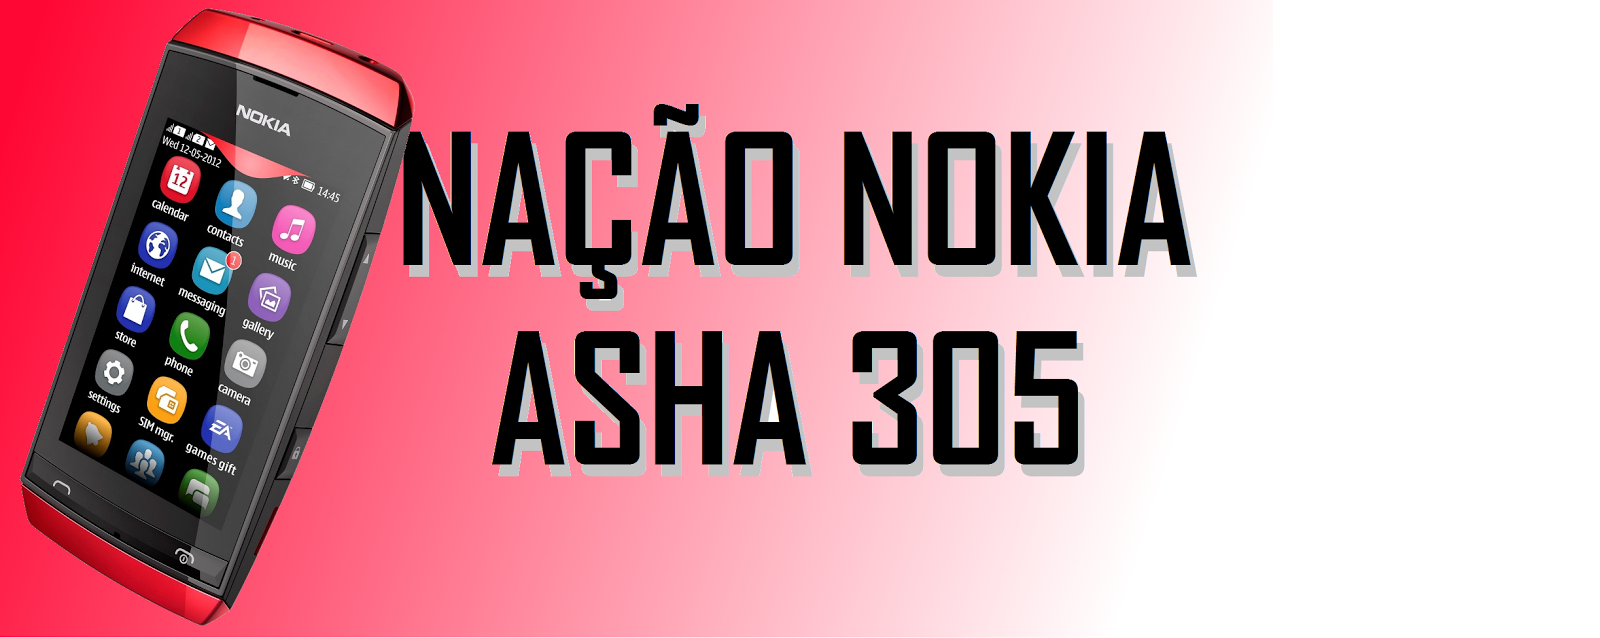 NAsha 305 - Nação Nokia Asha 305: games, wallpaper, apps, vídeos e Musicas.